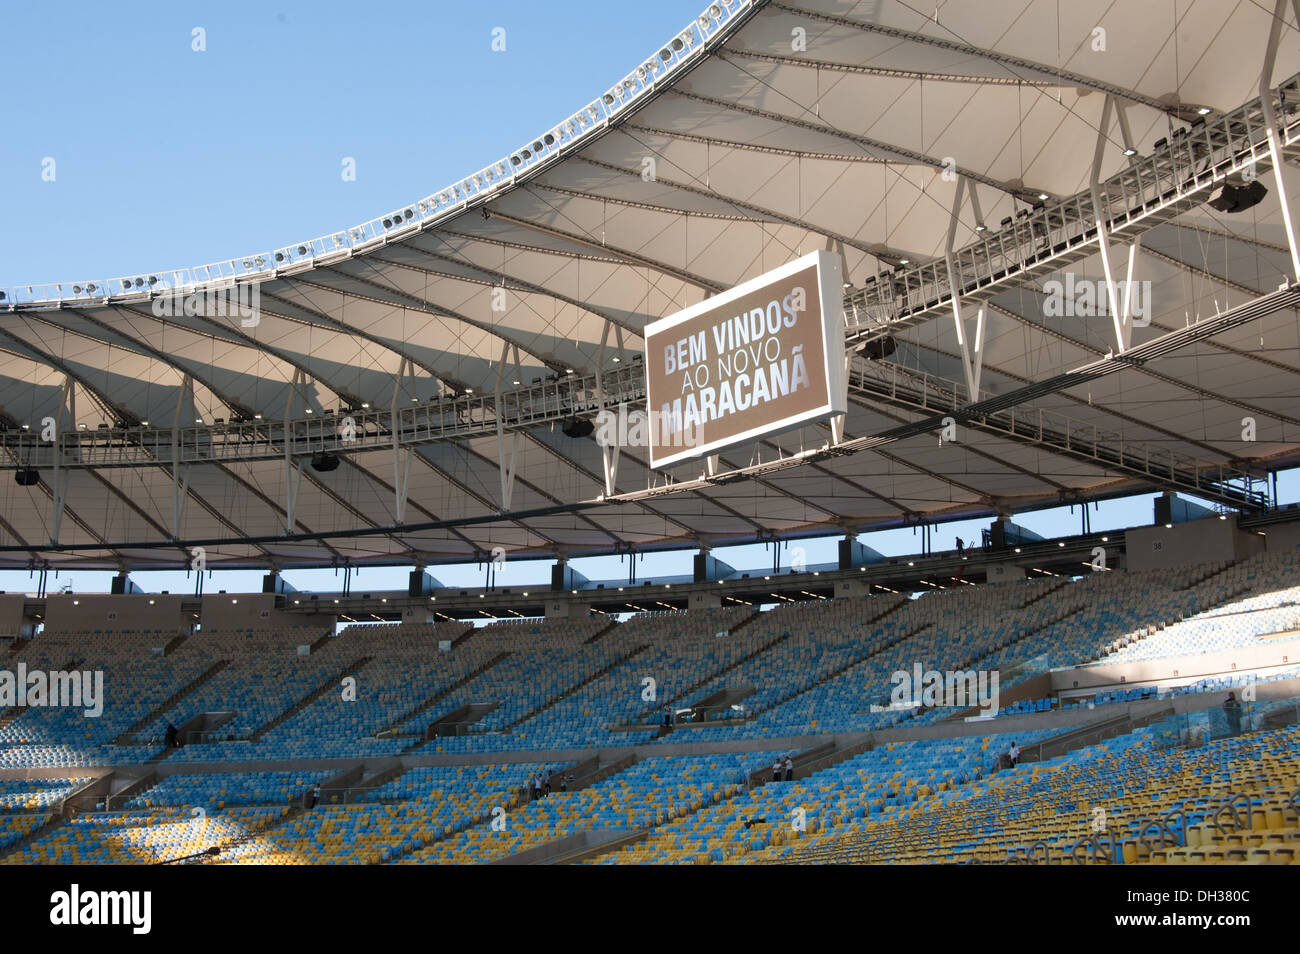 Die neu umgebaute Maracana Stadion, Rio de Janeiro, Brasilien. Eines der 2014 World Cup Stadt Veranstaltungsorte. Stockfoto